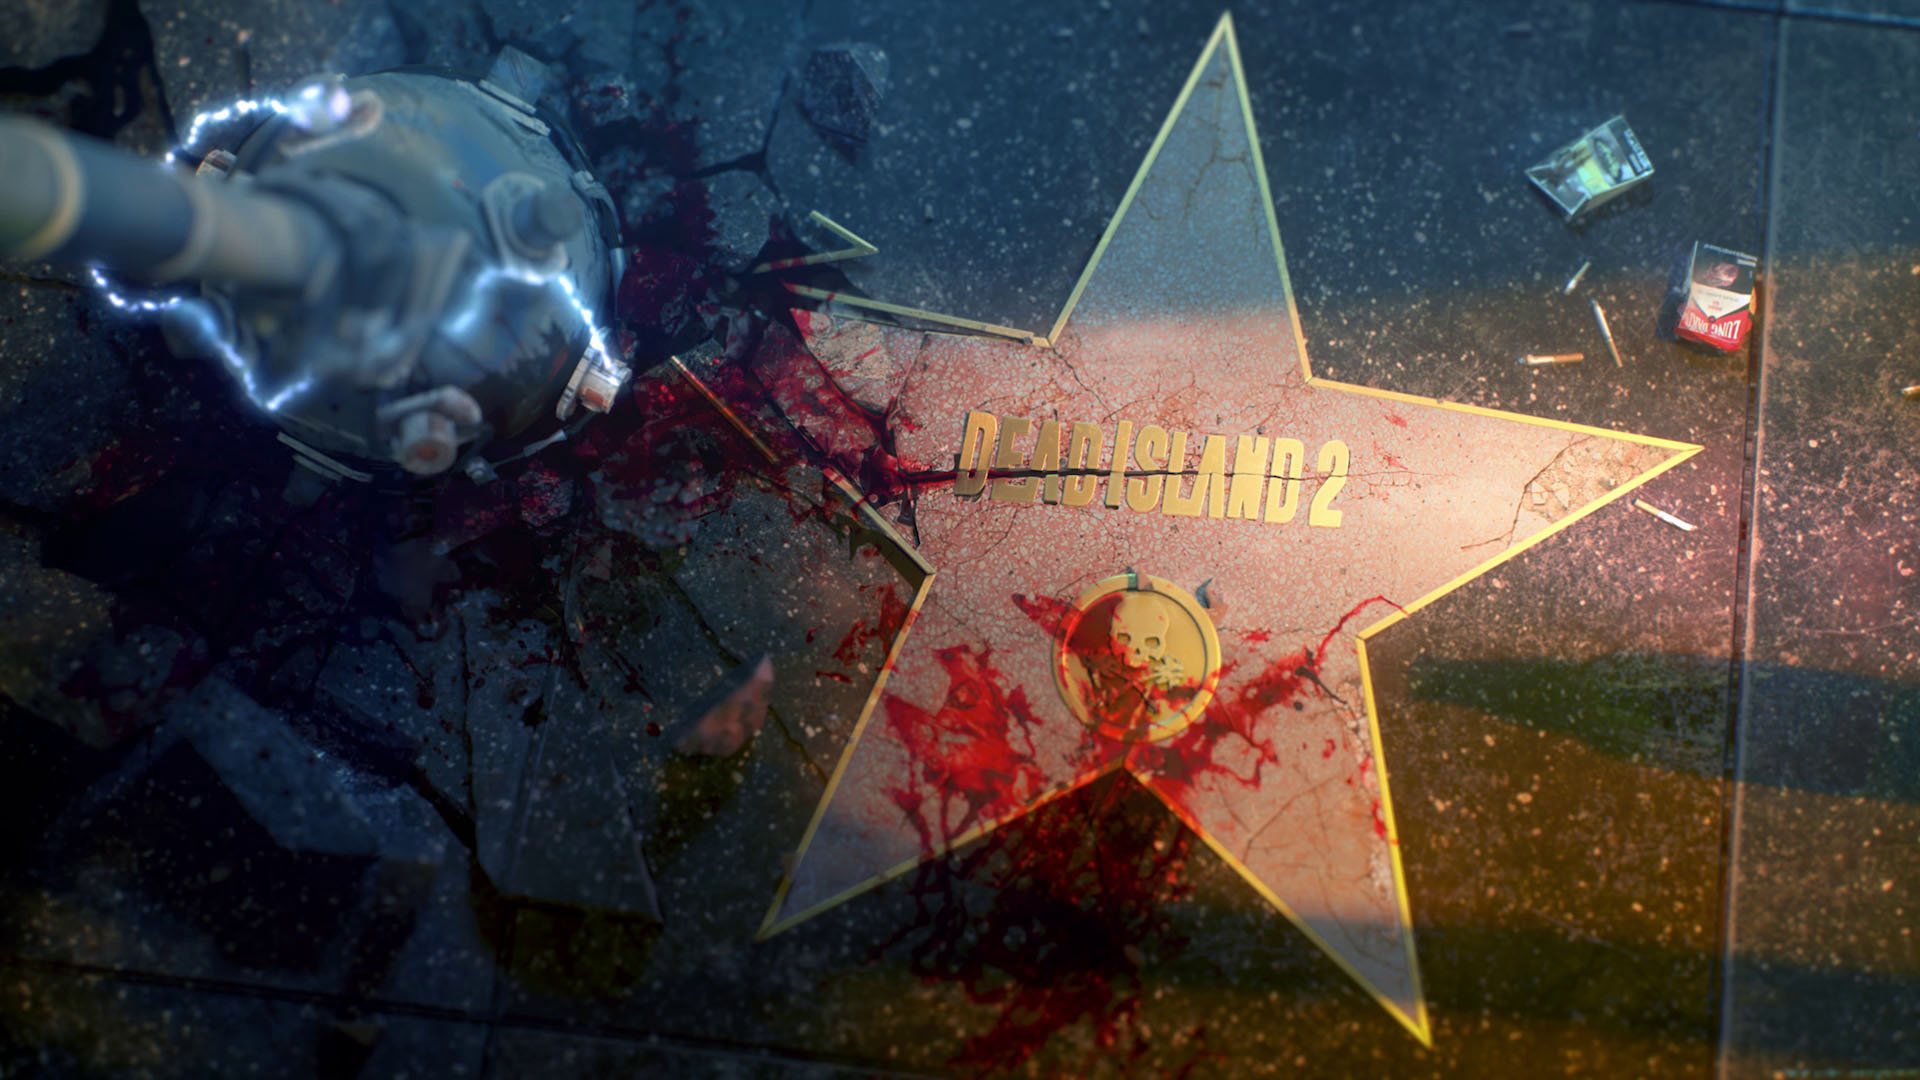 Review: Dead Island 2 is a sickeningly gruesome joy